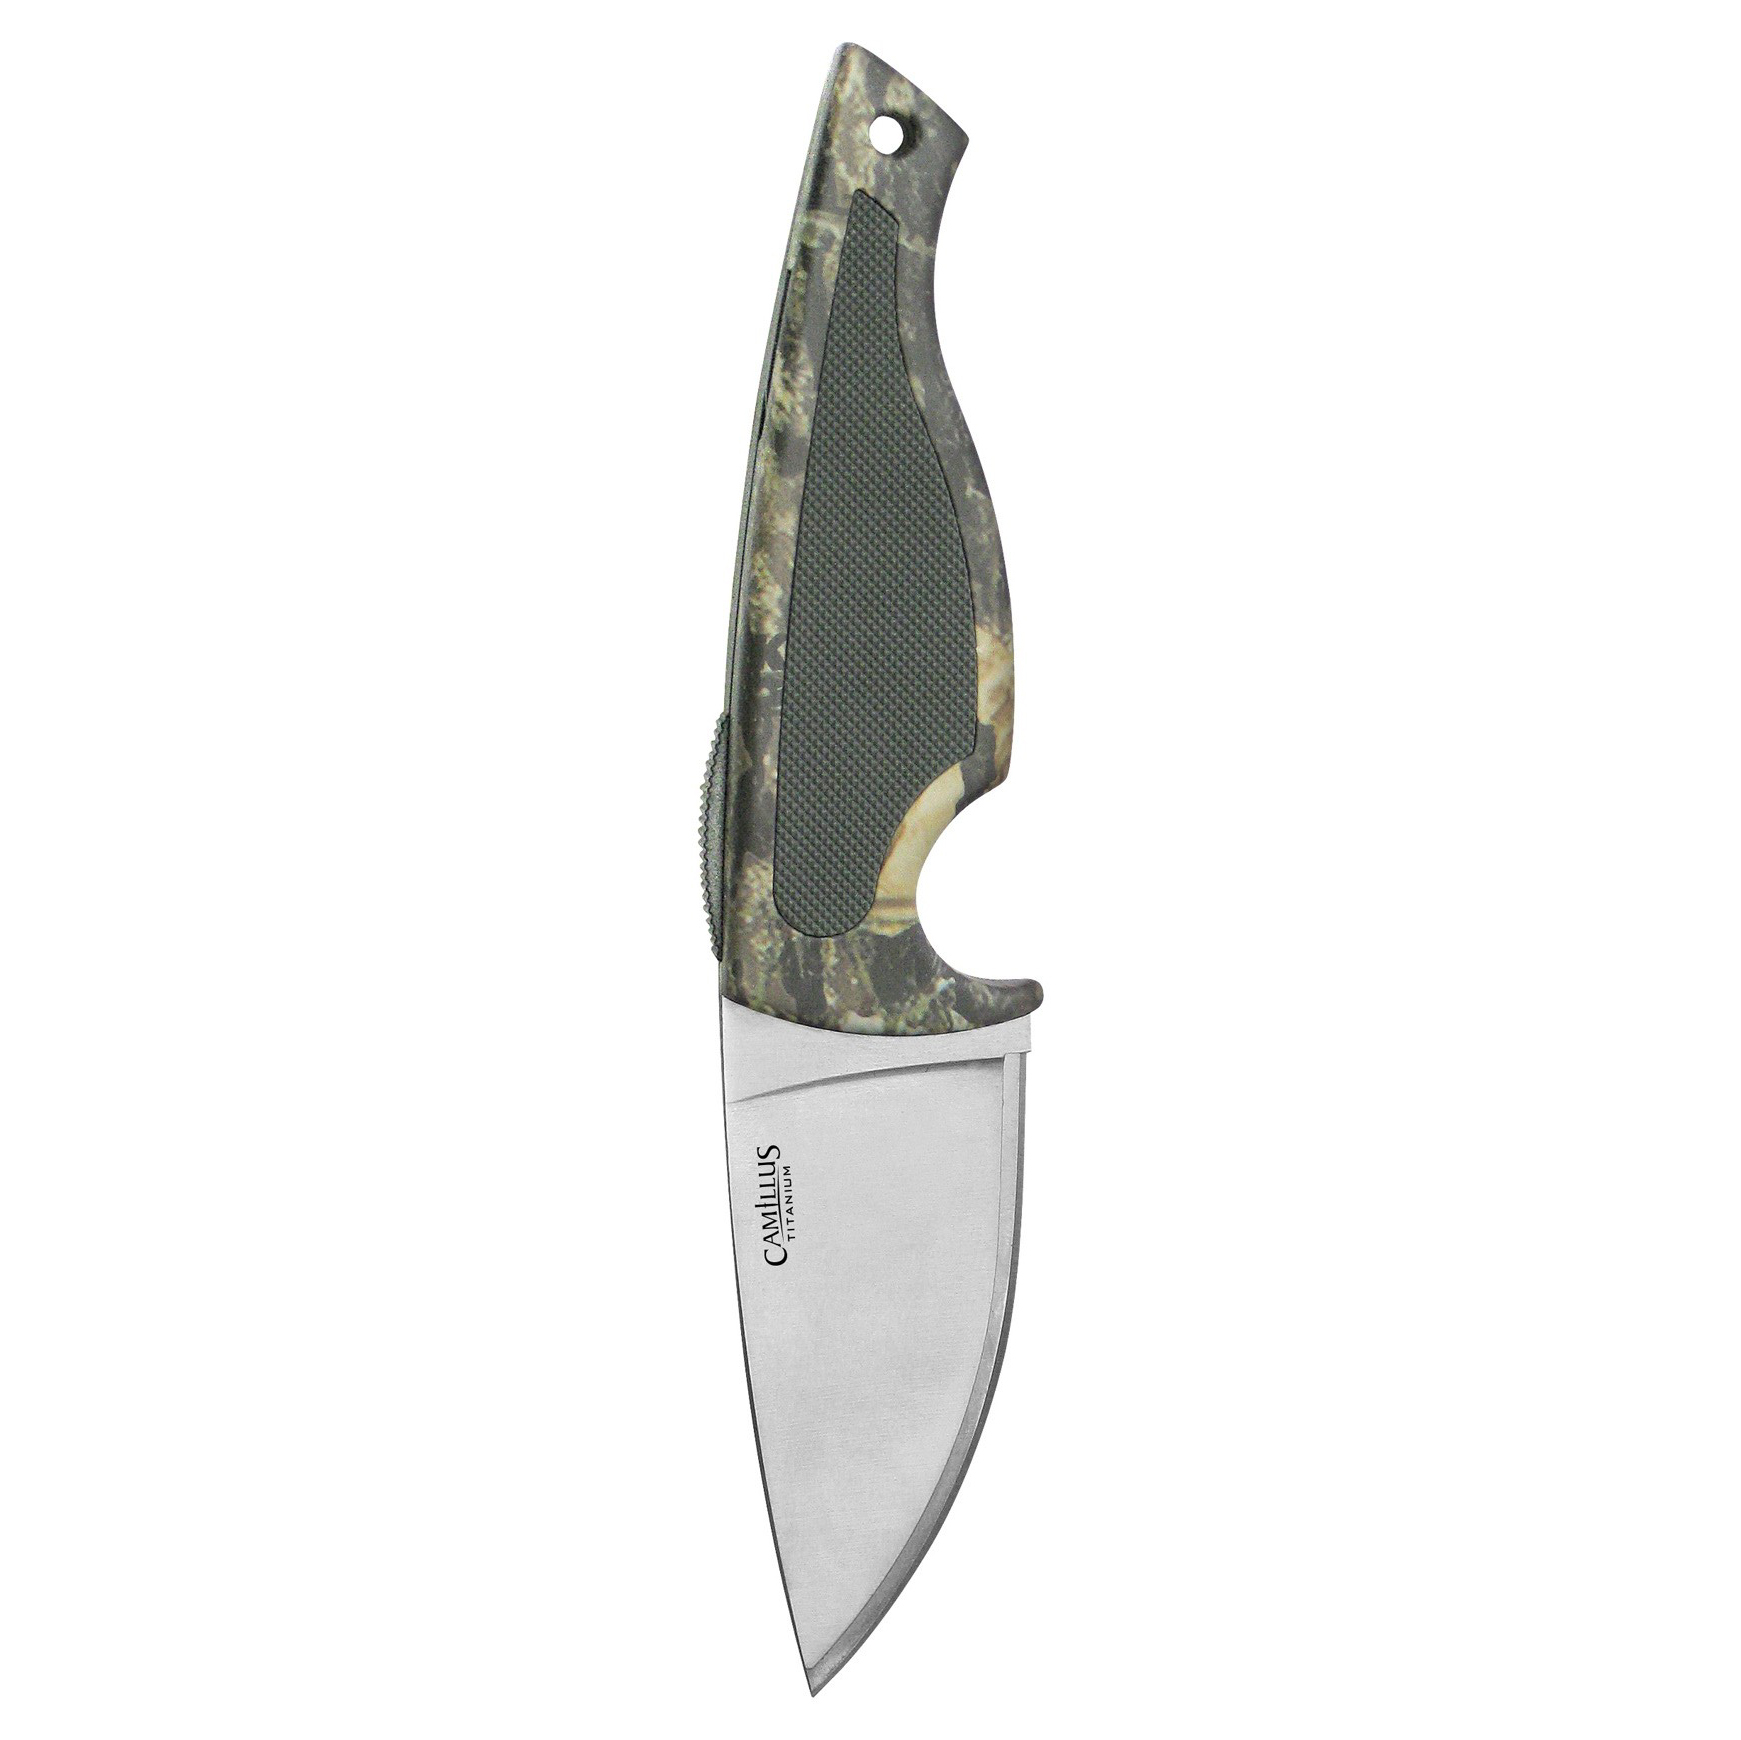 Нож со сменным лезвием клинка Camillus TigerSharp®, сталь 420J2, рукоять Zytel®, камуфляж от Ножиков